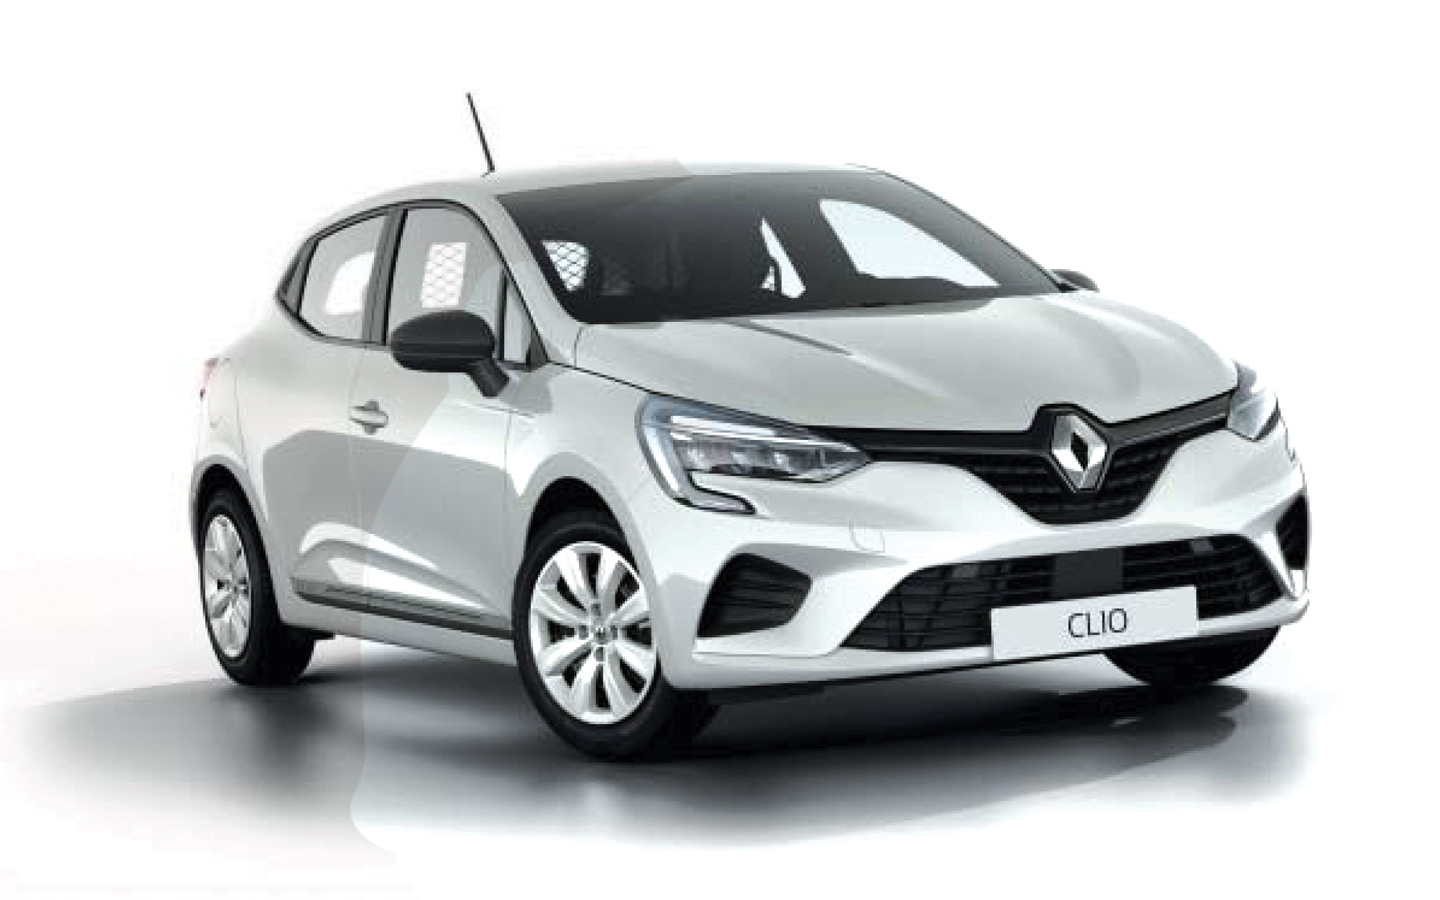 Renault Clio transformation